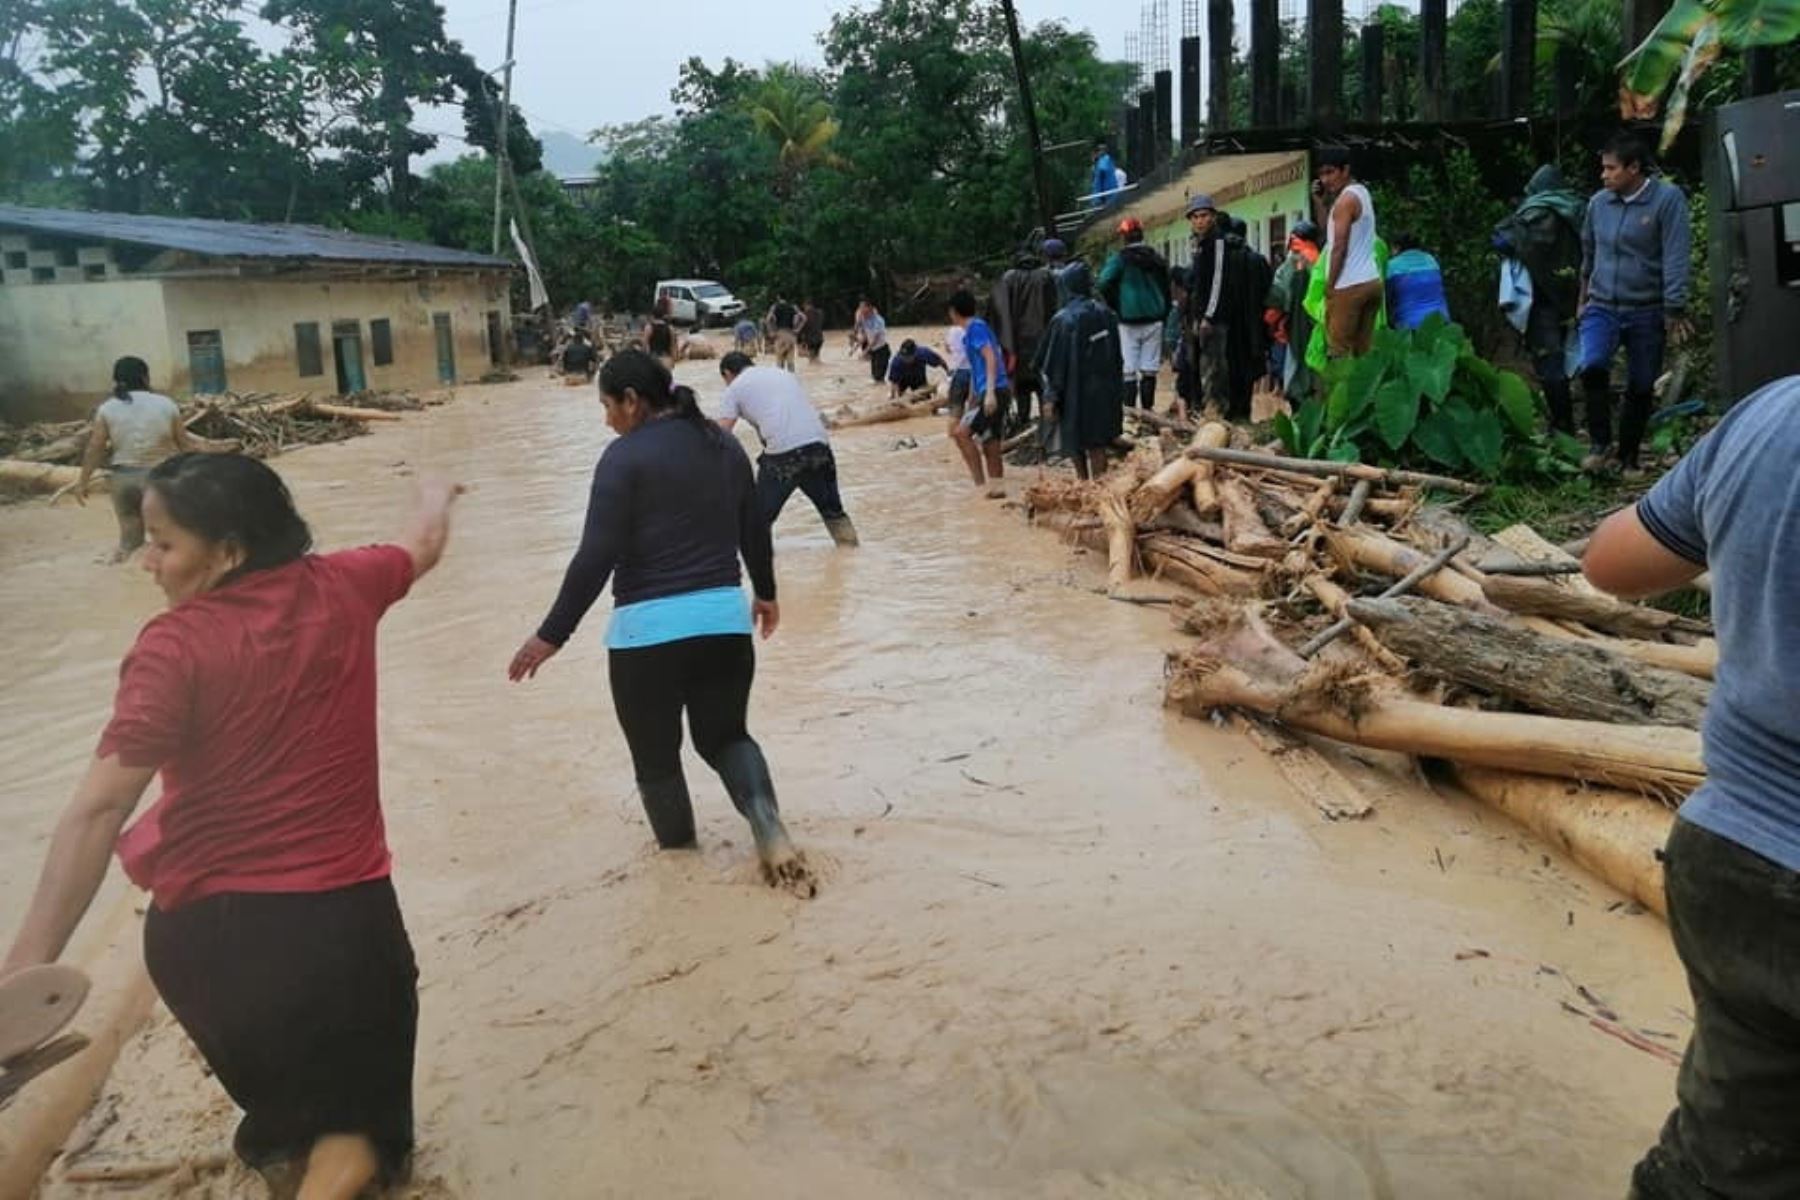 Lluvias intensas y desborde de ríos provocaron daños en 10 viviendas y dejaron más de 300 personas damnificadas y afectadas en el distrito de Uchiza, provincia de Tocache, San Martín.